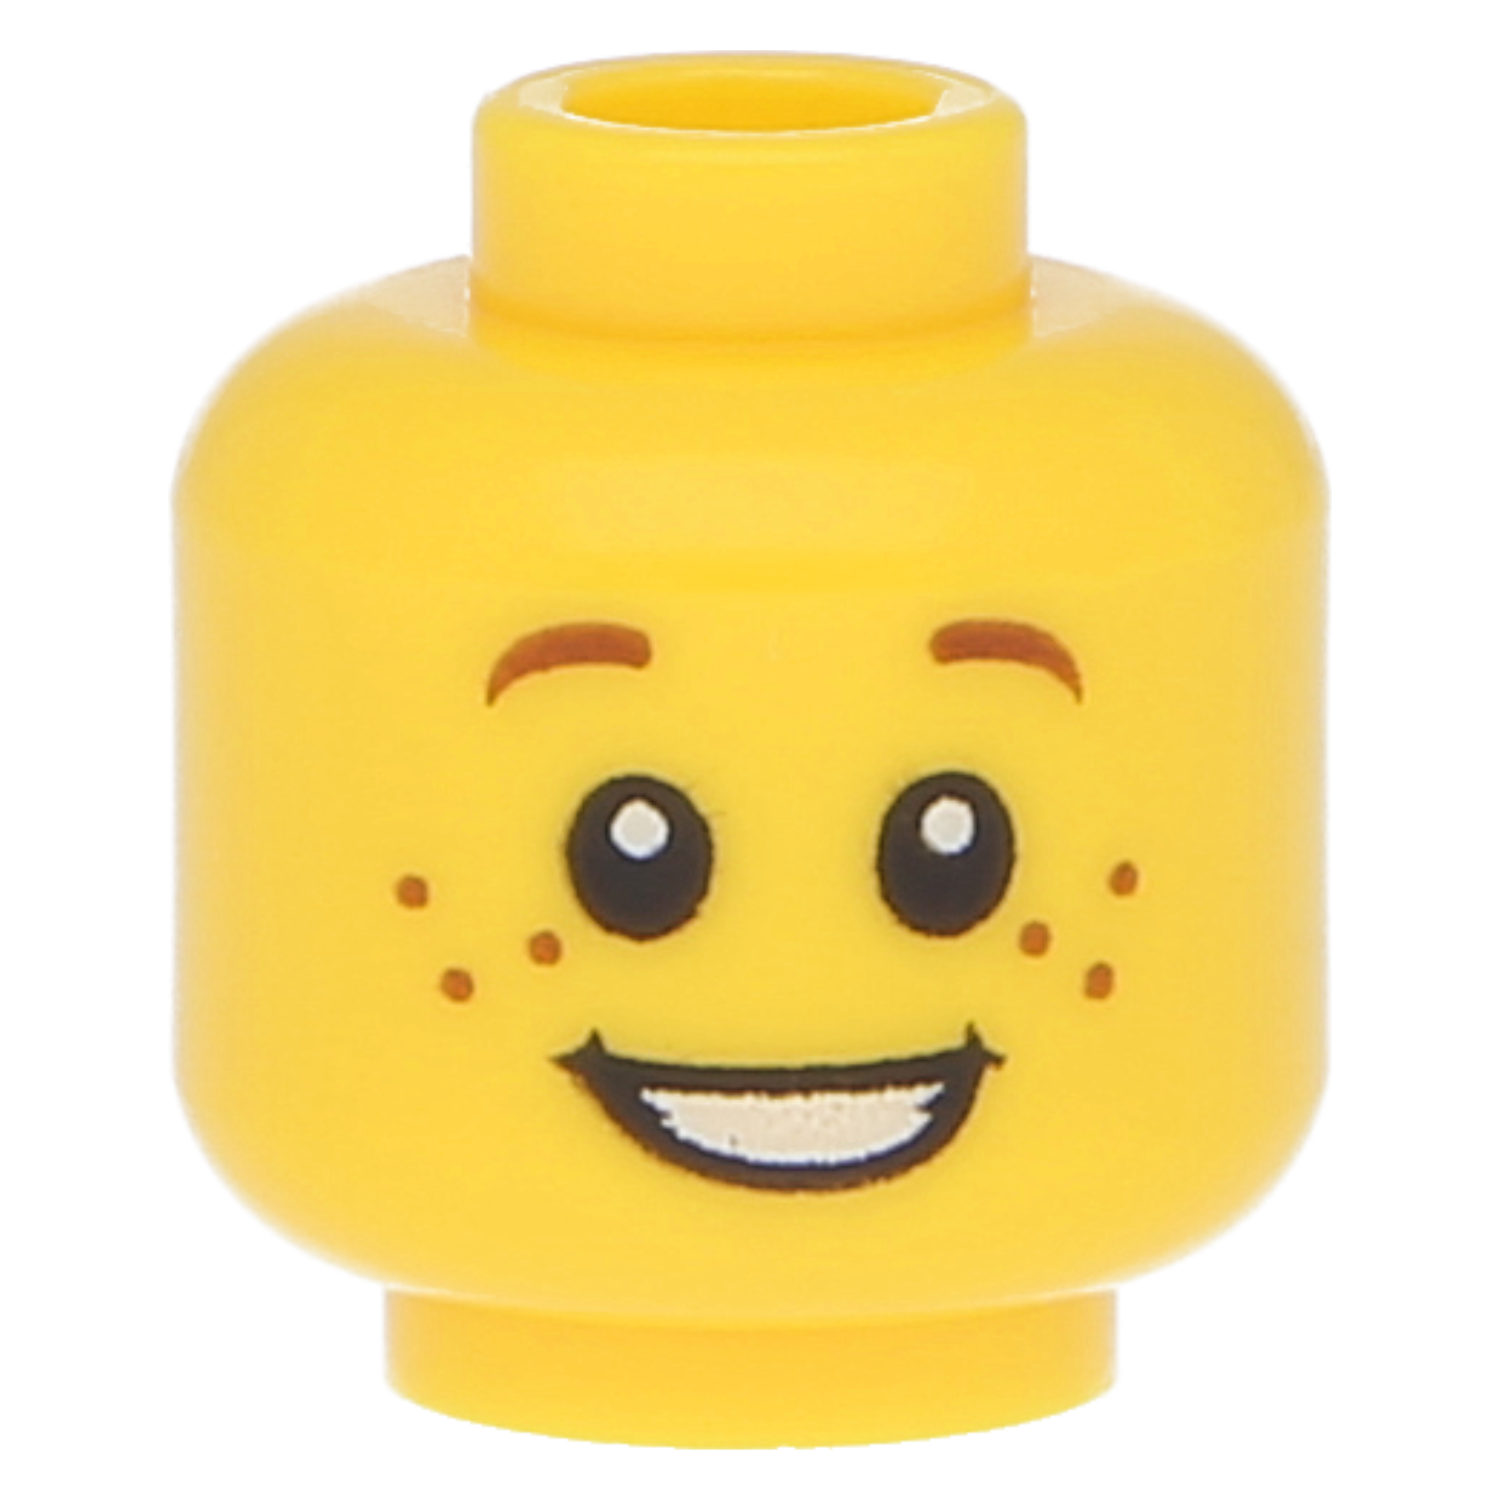 LEGO Minifiguren Köpfe (männlich) - Weiße Pupillen, Sommersprossen und offenes Lächeln